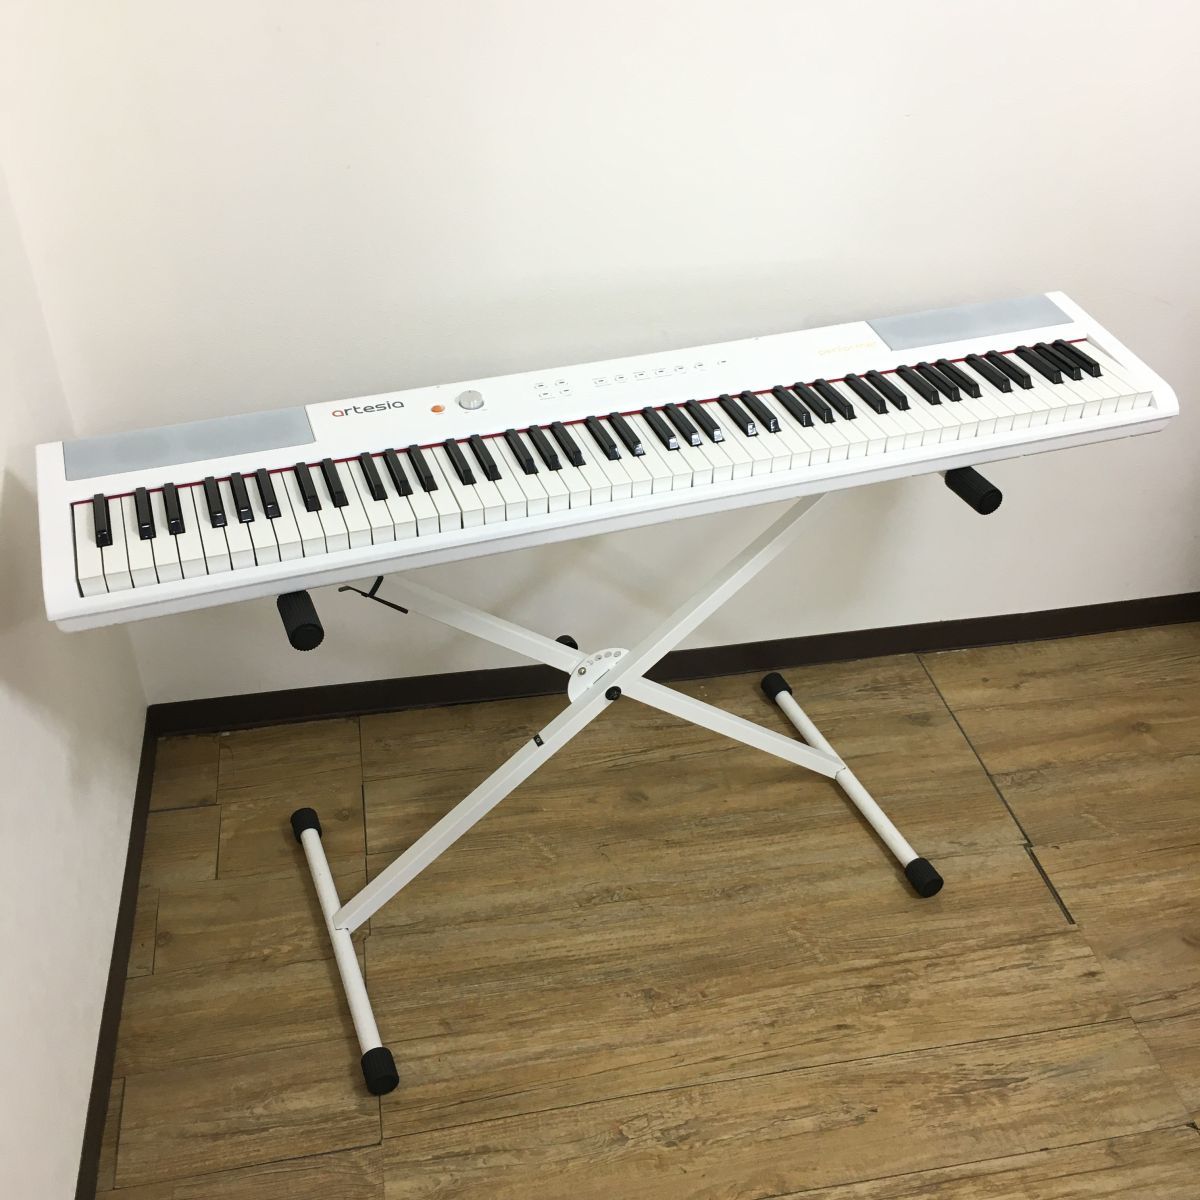 artesia Artesia электронное пианино 88 клавиатура Performer подставка имеется [312-101#200 Okinawa * отдаленный остров отправка не возможно ]